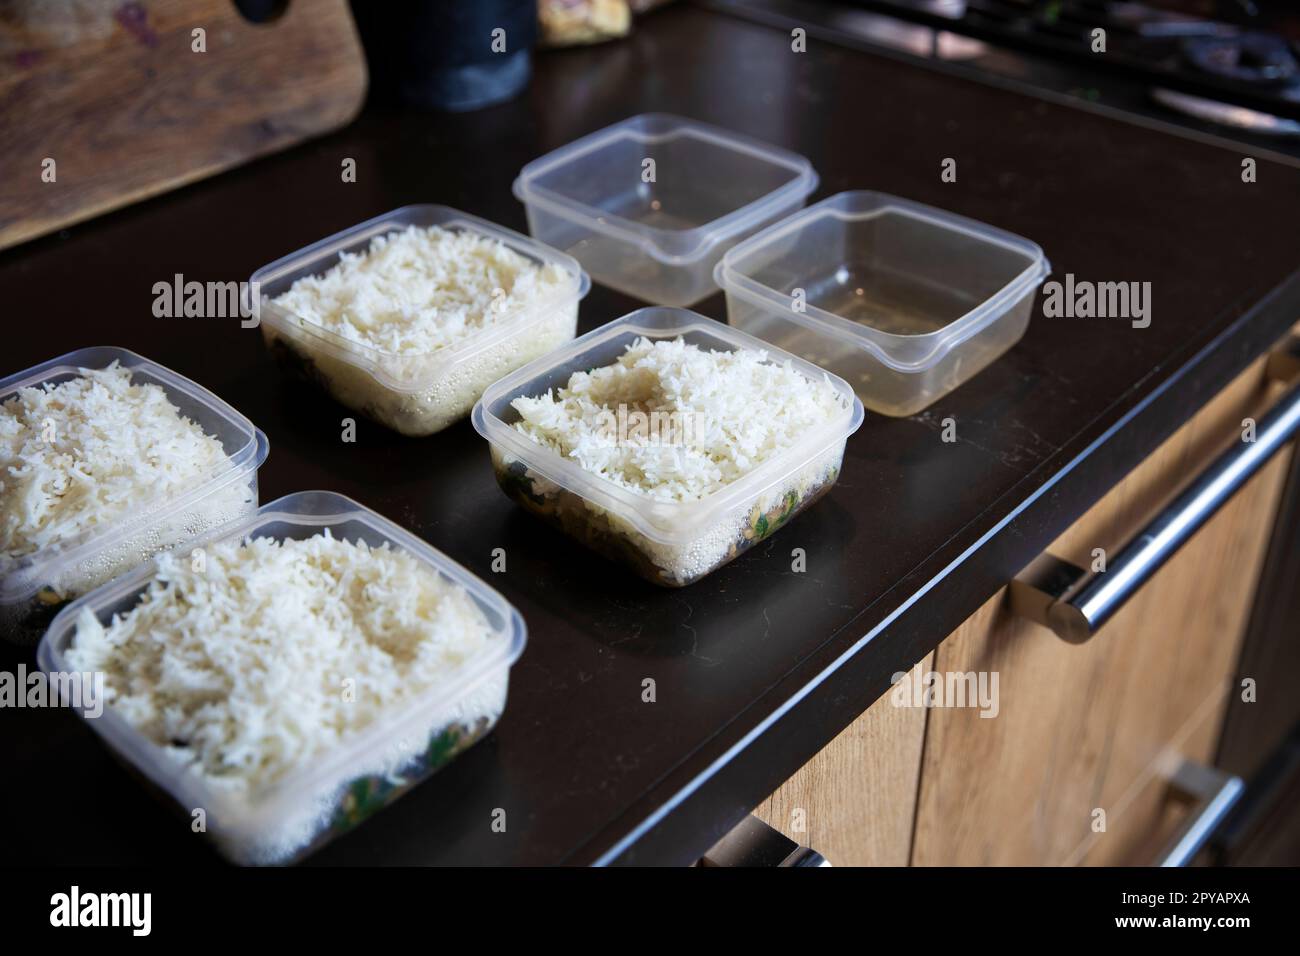 Speisezubereitung Stapel hausgemachter Reis- und Hühnergerichte in Behältern, die zum Einfrieren bereit sind, um sie später als schnelle und einfache Fertiggerichte zu verwenden. Nahrungsvorbereitung für eine gesunde Ernährung Stockfoto